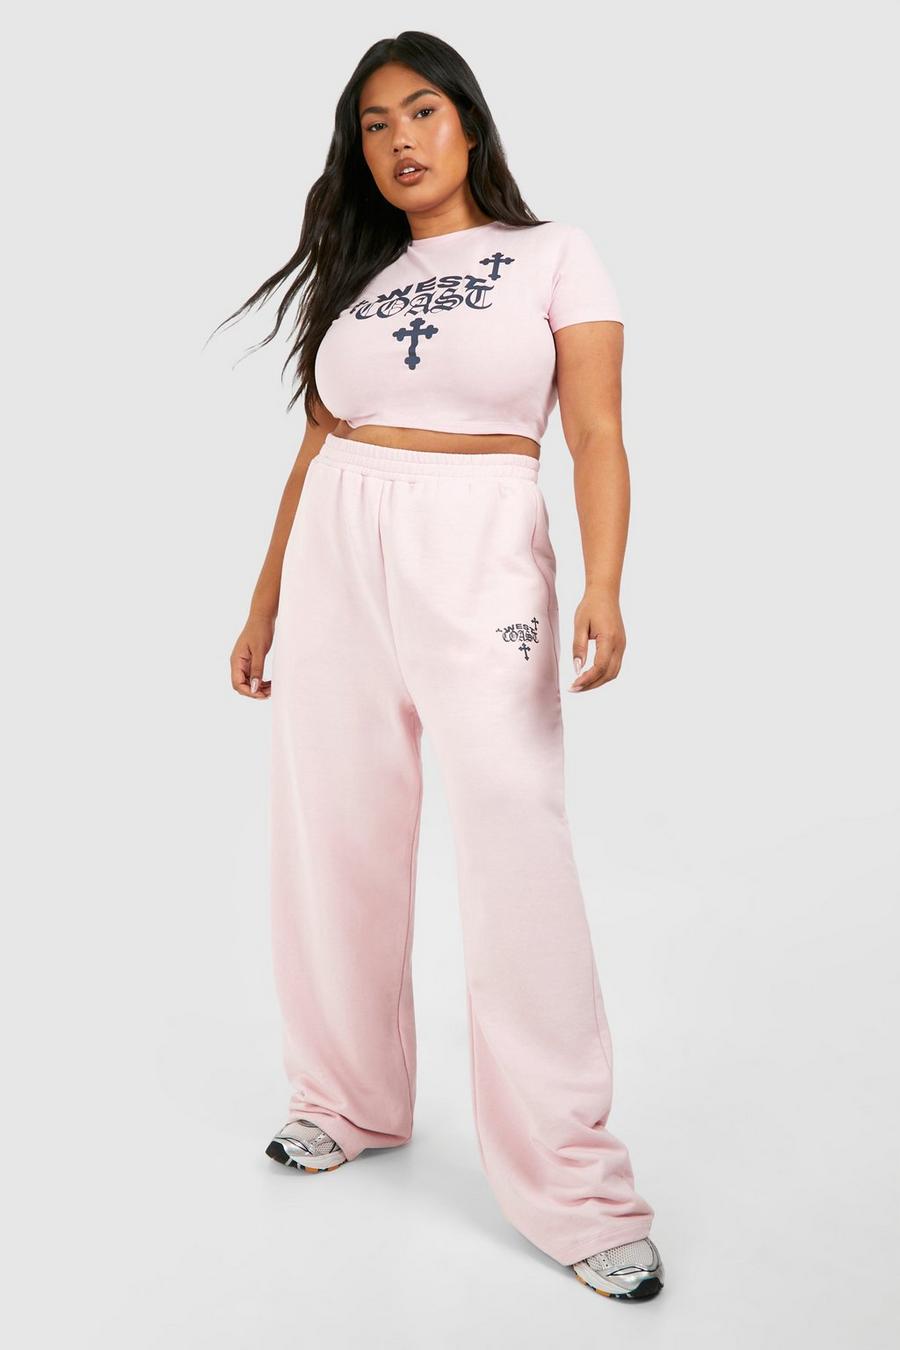 Grande taille - Ensemble à imprimé West Coast Cross avec t-shirt court et jogging, Baby pink image number 1